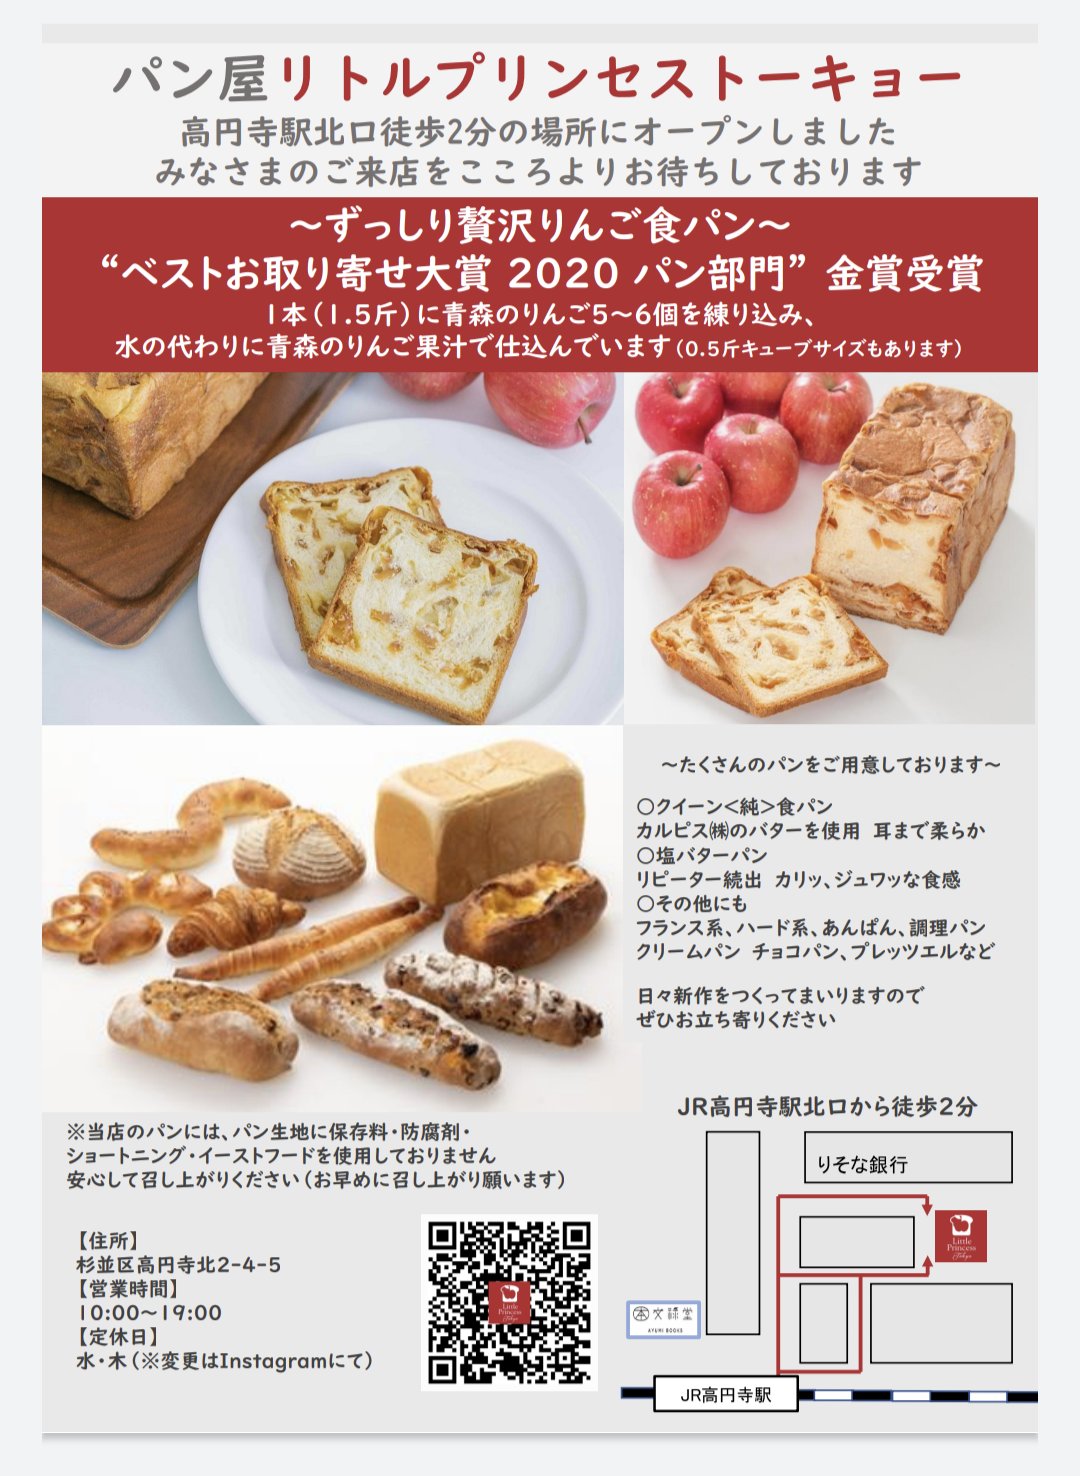 まるごと青森 ずっしり贅沢りんご食パンで有名な パン屋 リトルプリンセス の東京店 が高円寺駅近にopenしましたよー 高円寺 に行けば りんご食パンはもちろん 青森 で食べて